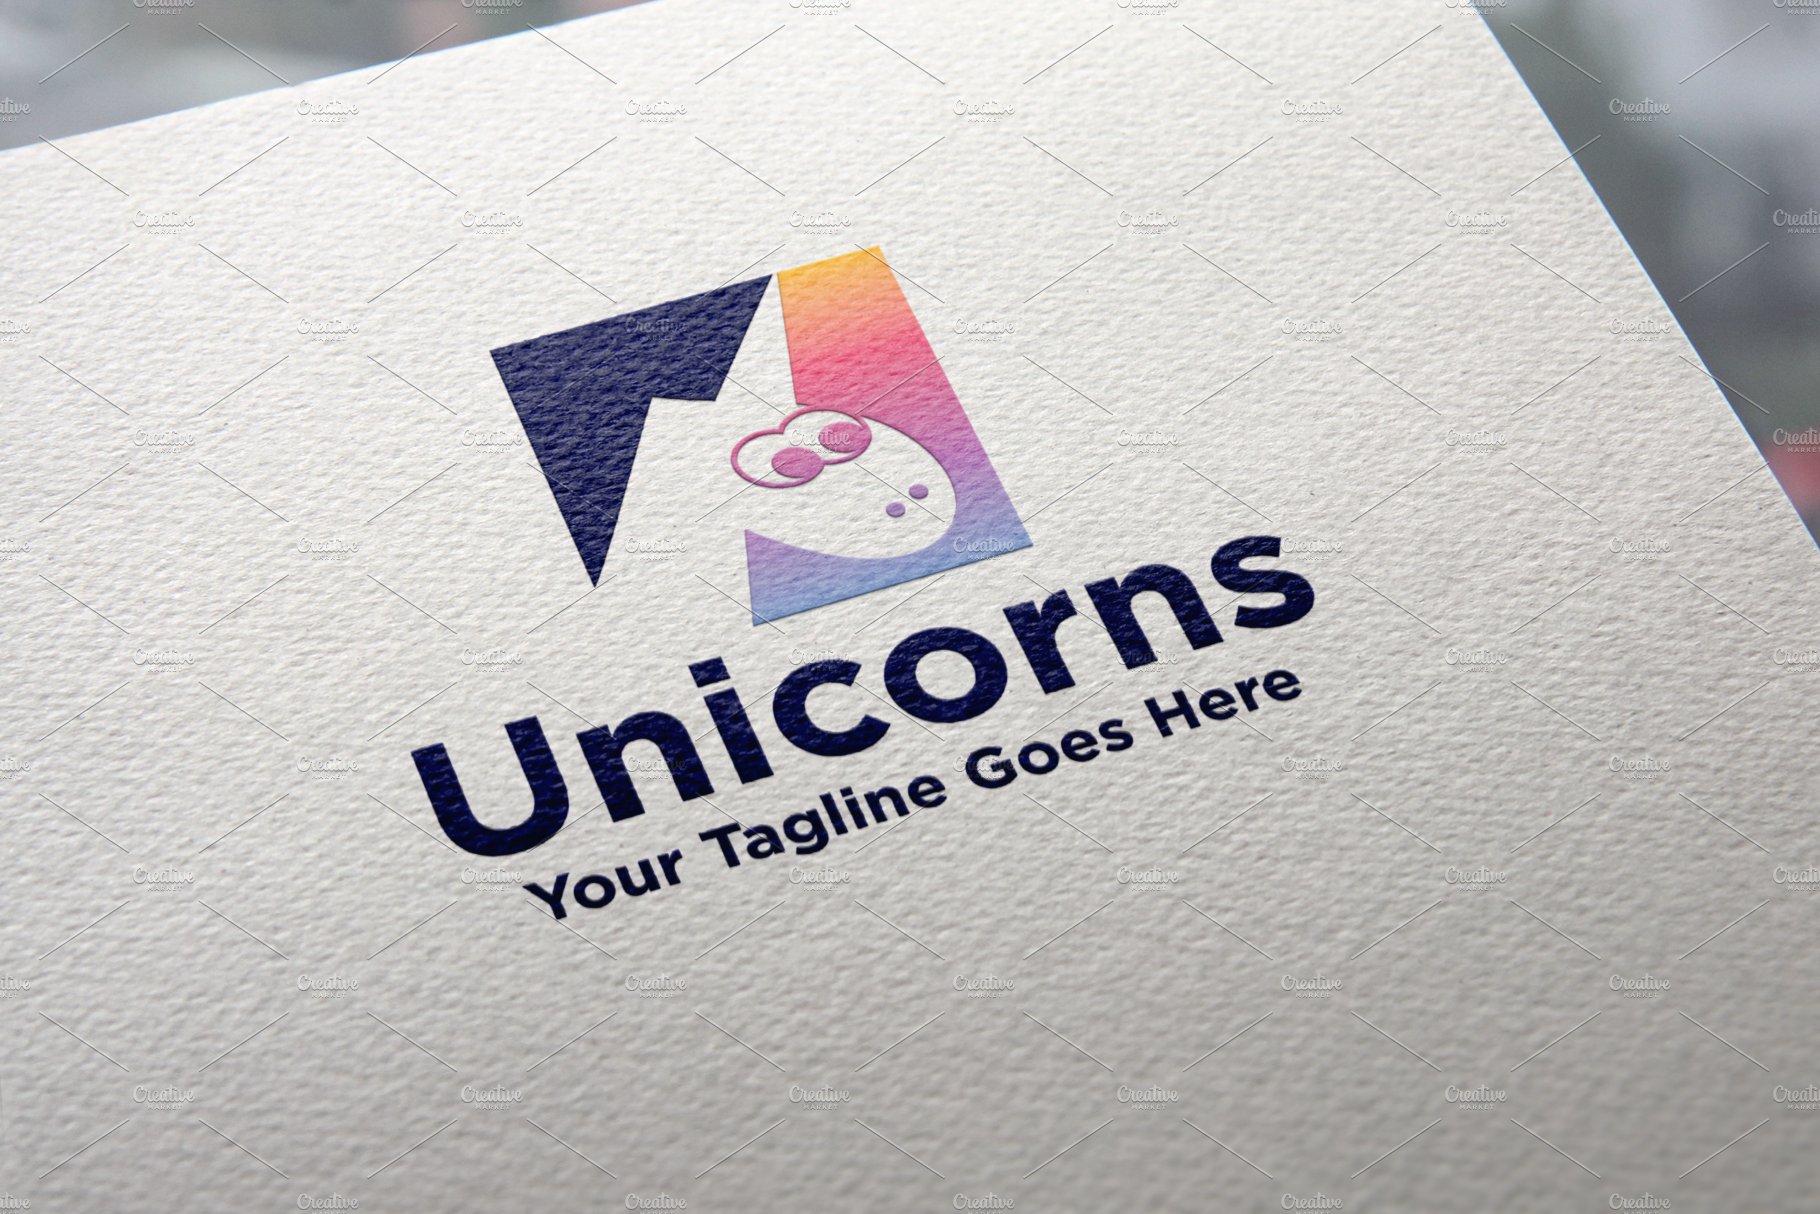 Unicorns Logo cover image.